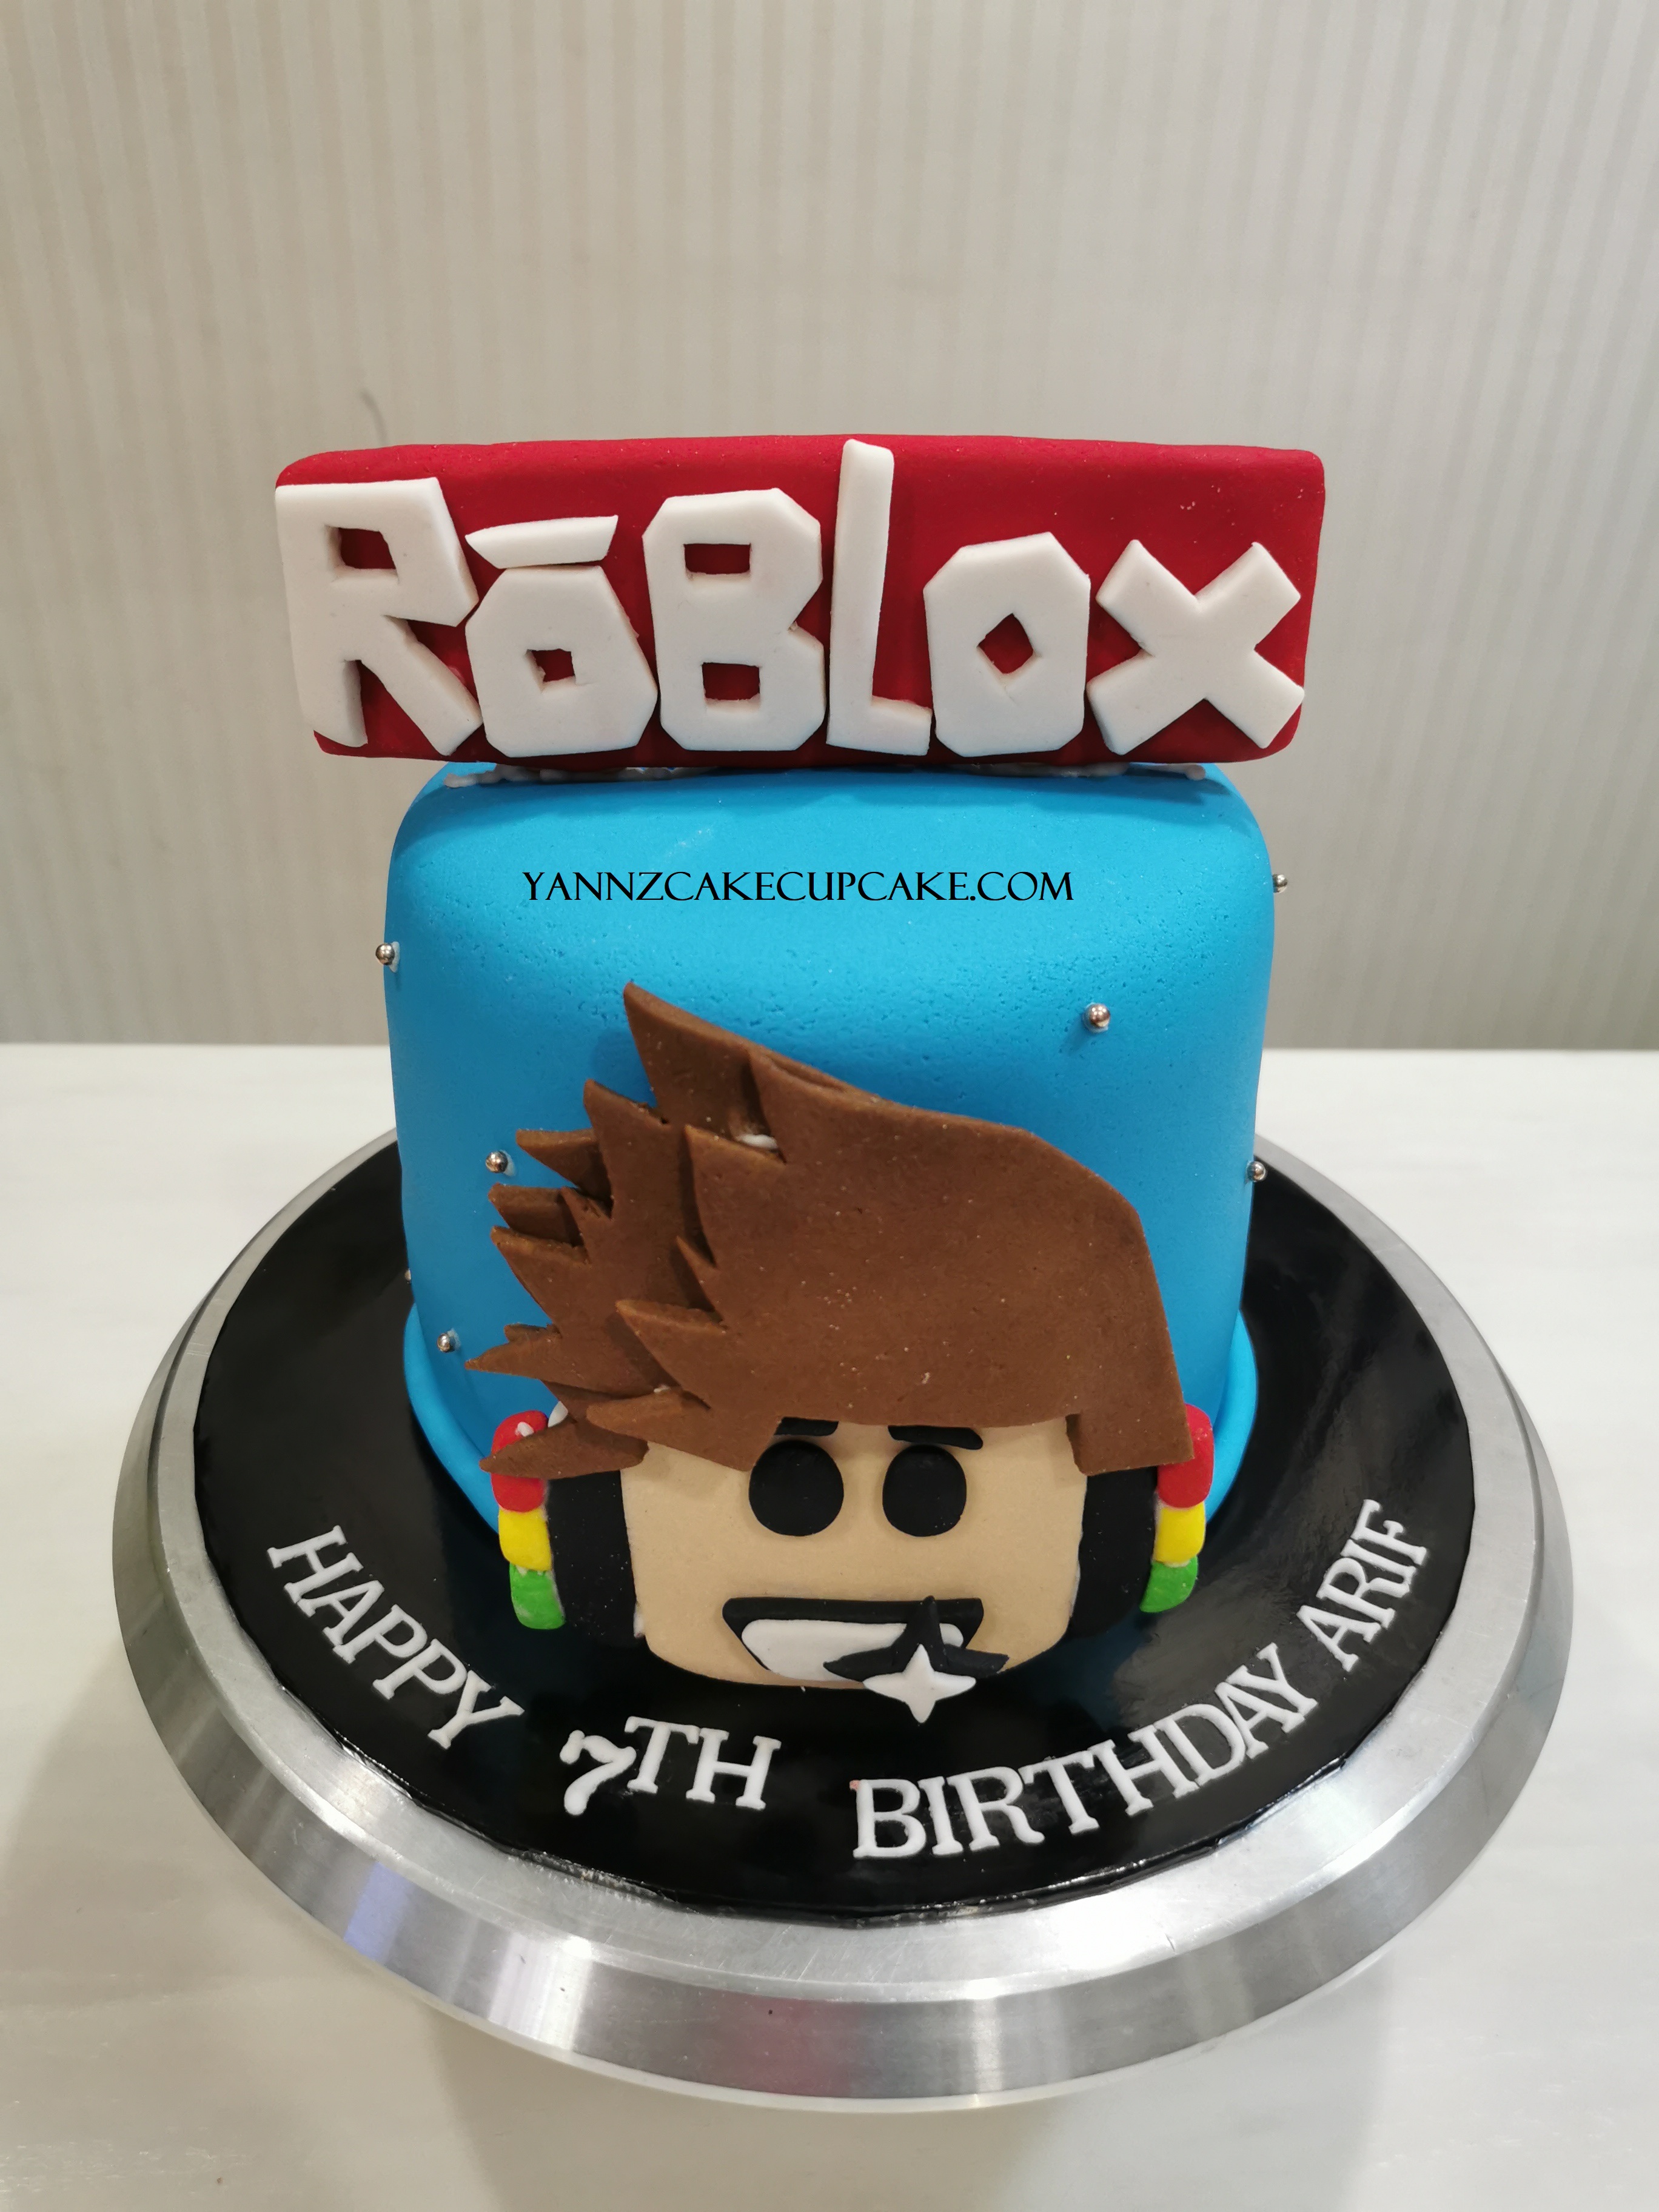 Roblox Rainbow Cake Yannzcakecupcakecom - roblox birthday cake 2020